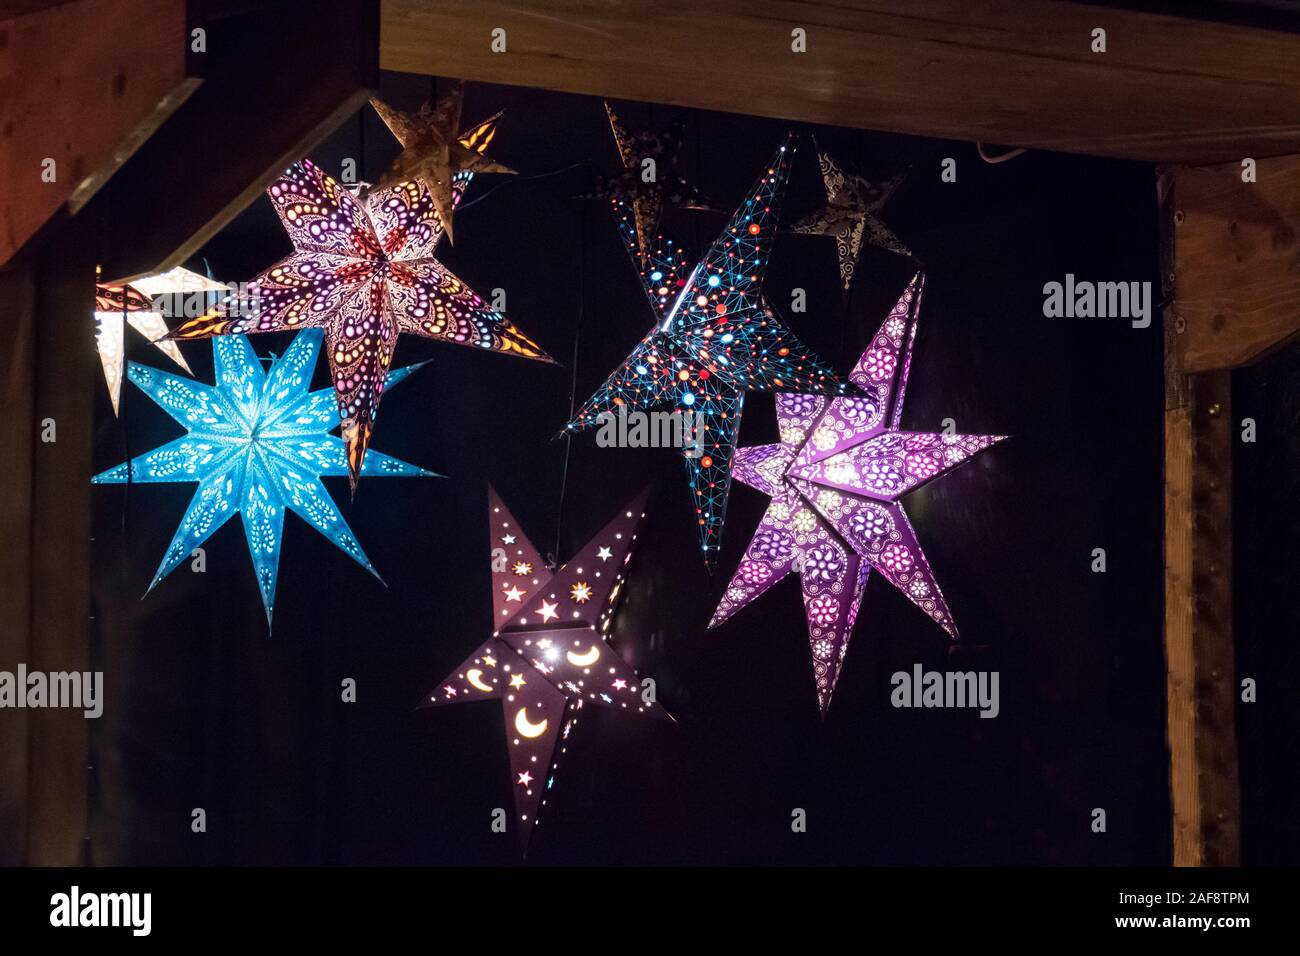 beleuchtete Sterne in bunten Farben auf dem Weihnachtsmarkt Stock Photo